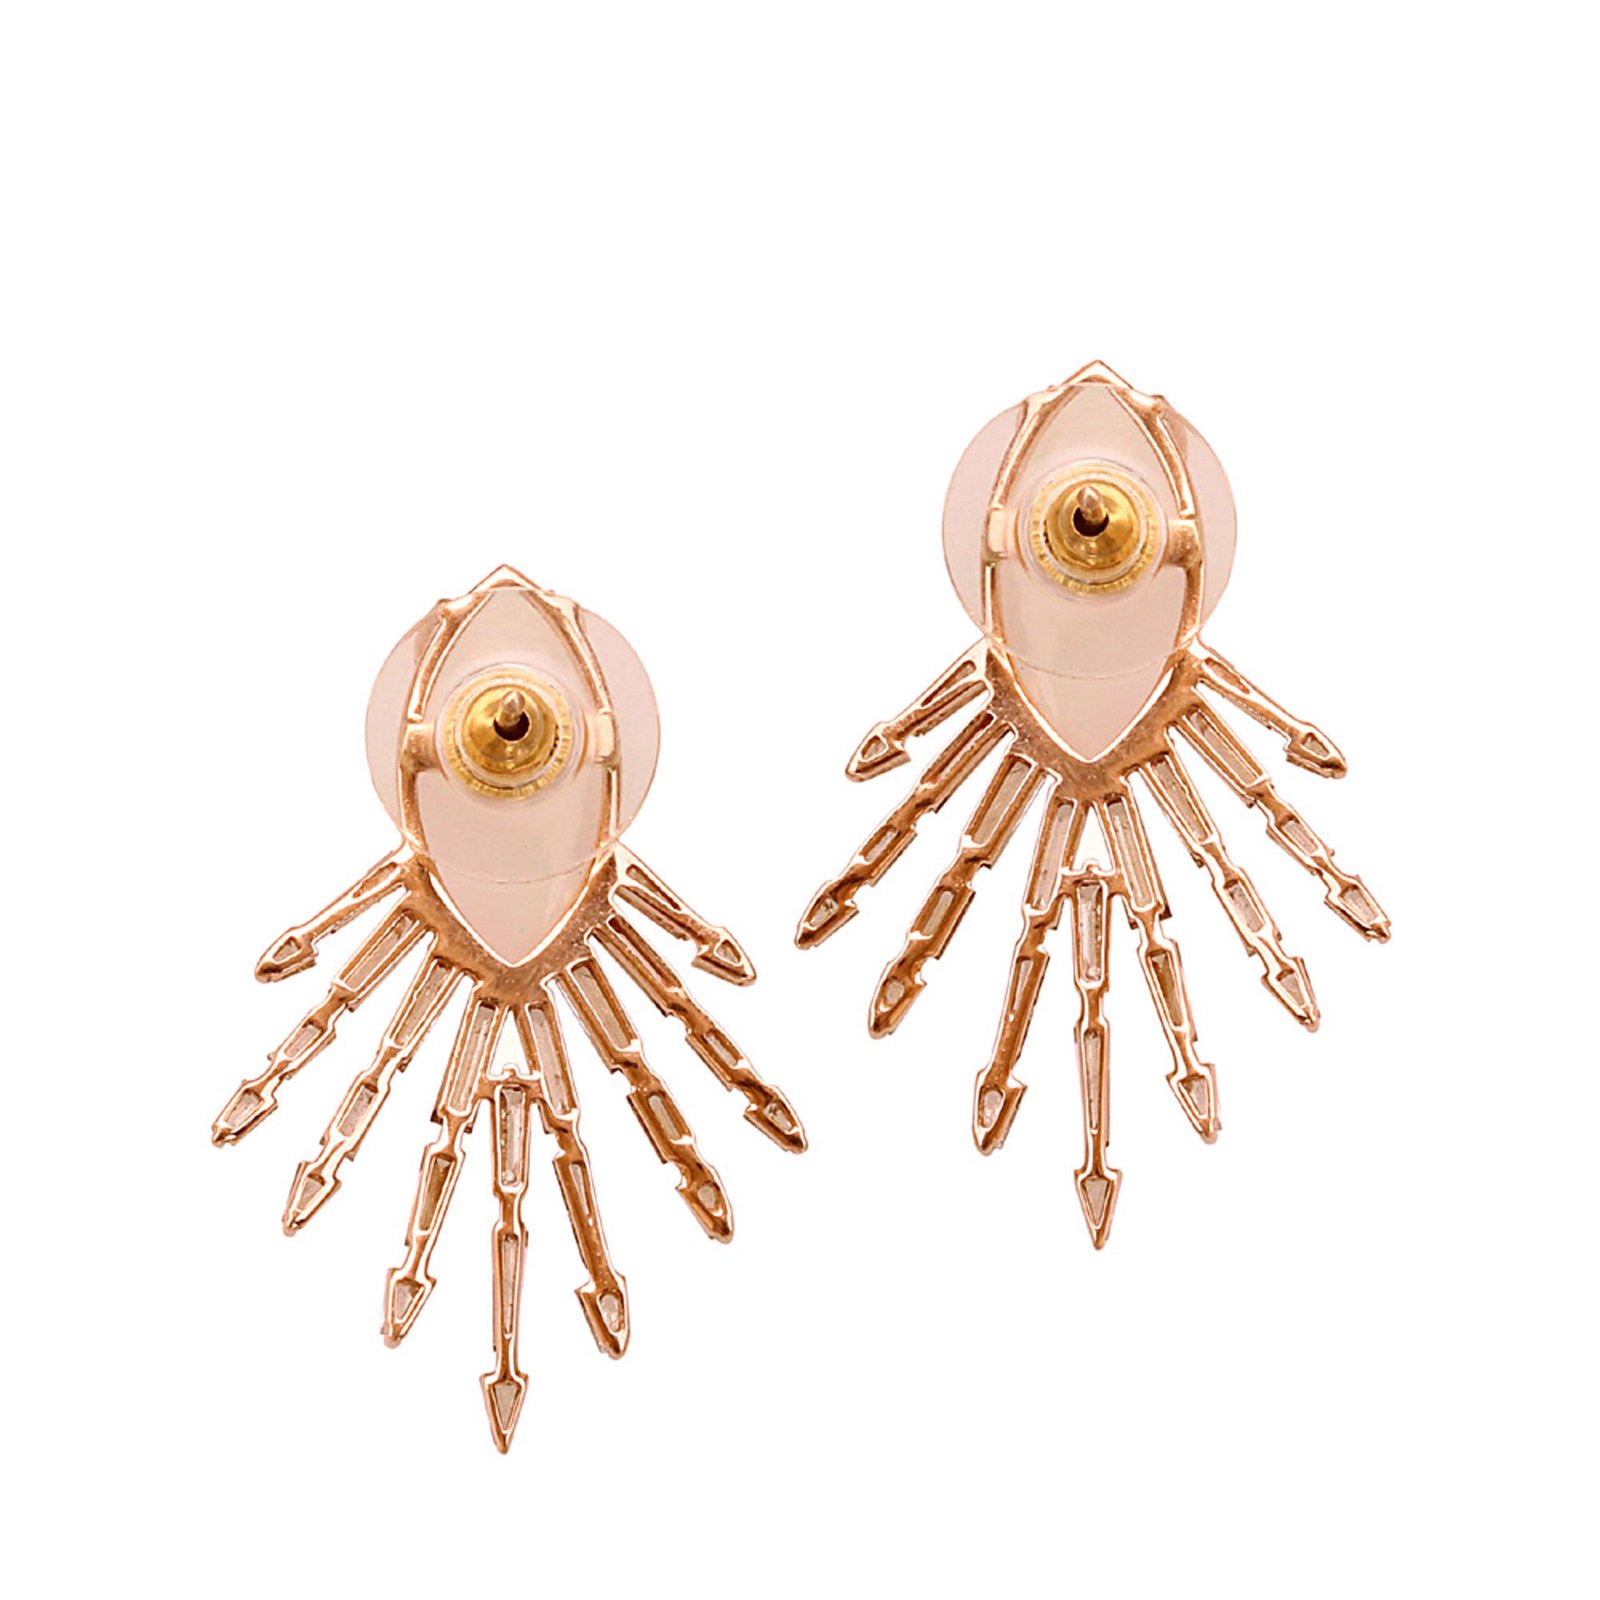 Marquise opal baguette diamond 18k gold stud earrings